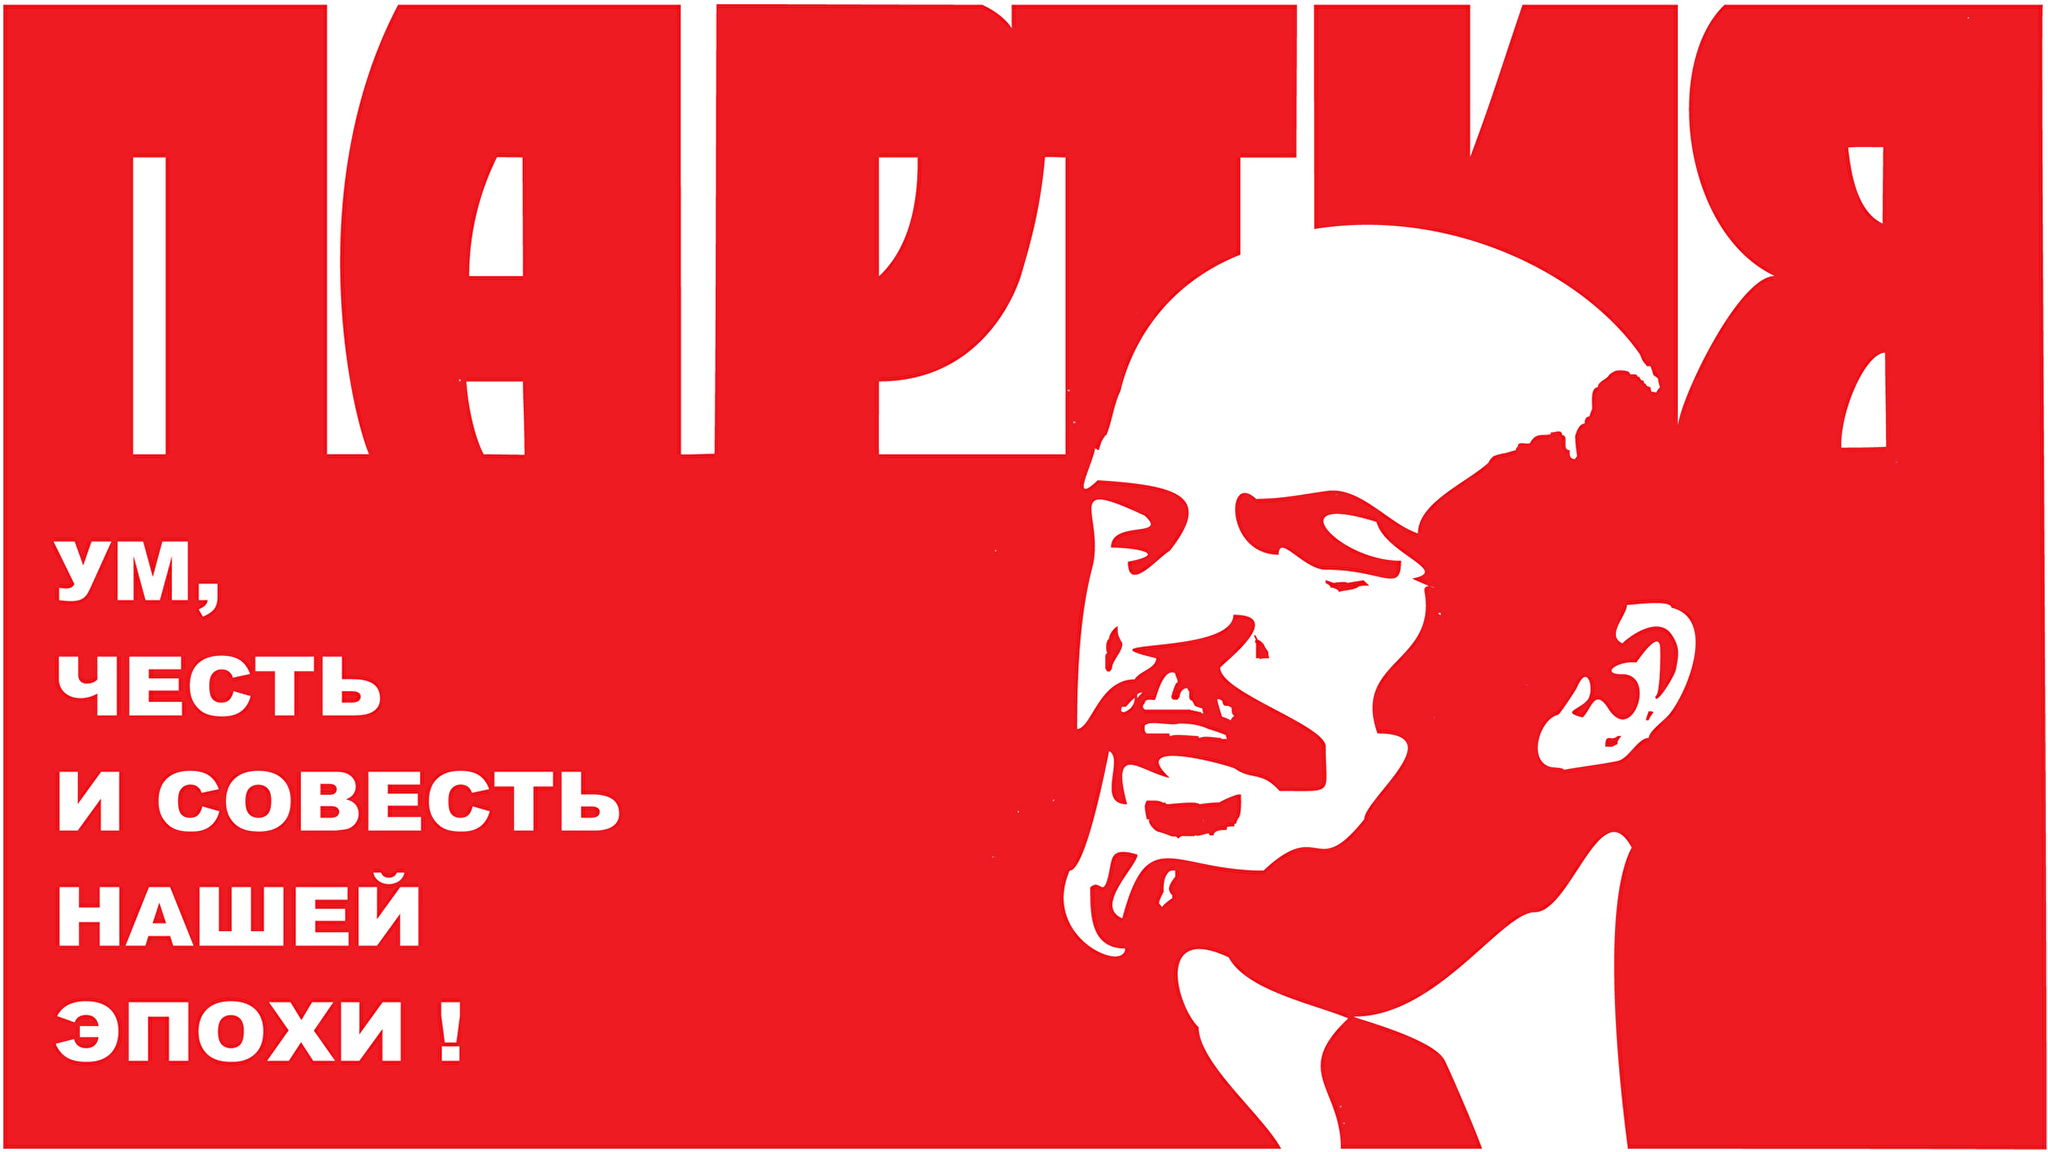 Реклама совести. Партия ум честь и совесть нашей эпохи плакат. Ленин плакат. Ленин партия ум честь и совесть нашей эпохи.